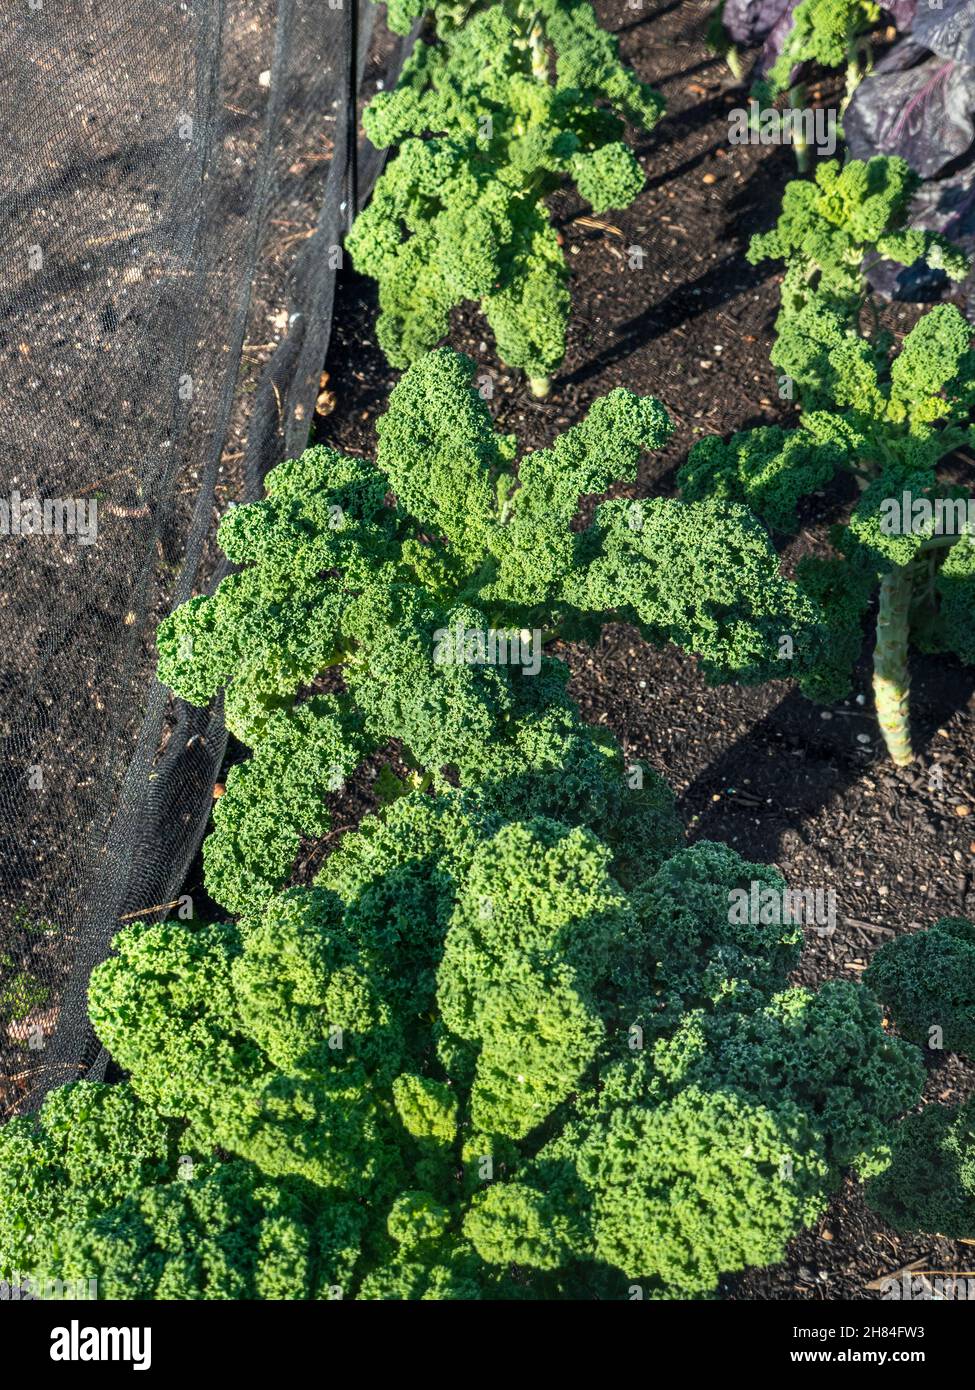 Kale 'CAPITAN' in einer Küche Gemüsegarten Patch angebaut, hinter Anti-Schädlingsnetz enviromesh. Es handelt sich um eine brassica, die ihrem ‘italienischen’ Cousin, Cavolo nero, sehr ähnlich ist und zur Familie der Kohl gehört. Kale hat dunkelgrüne, attraktive lockige Blätter, Kale hat sich zu einem der beliebtesten Gemüsesorten Großbritanniens entwickelt, das sowohl wegen seines gesunden Ernährungsprofils als auch wegen seiner gastronomischen Vielseitigkeit beliebt ist. Stockfoto